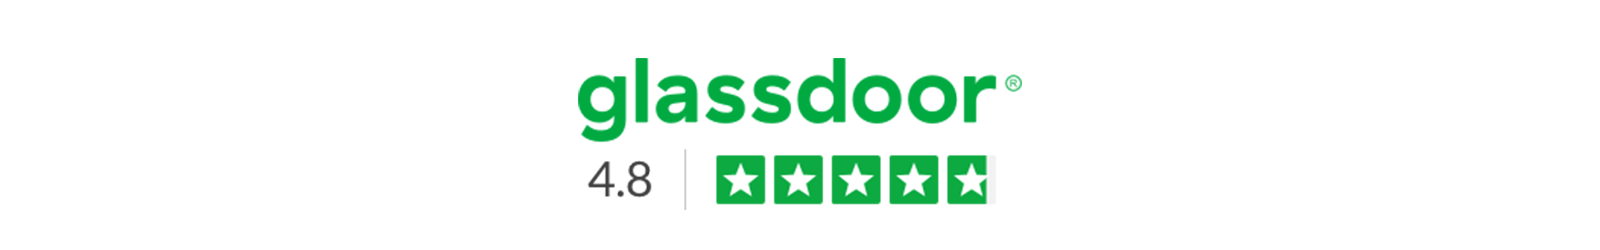 Ultraleap glassdoor rating